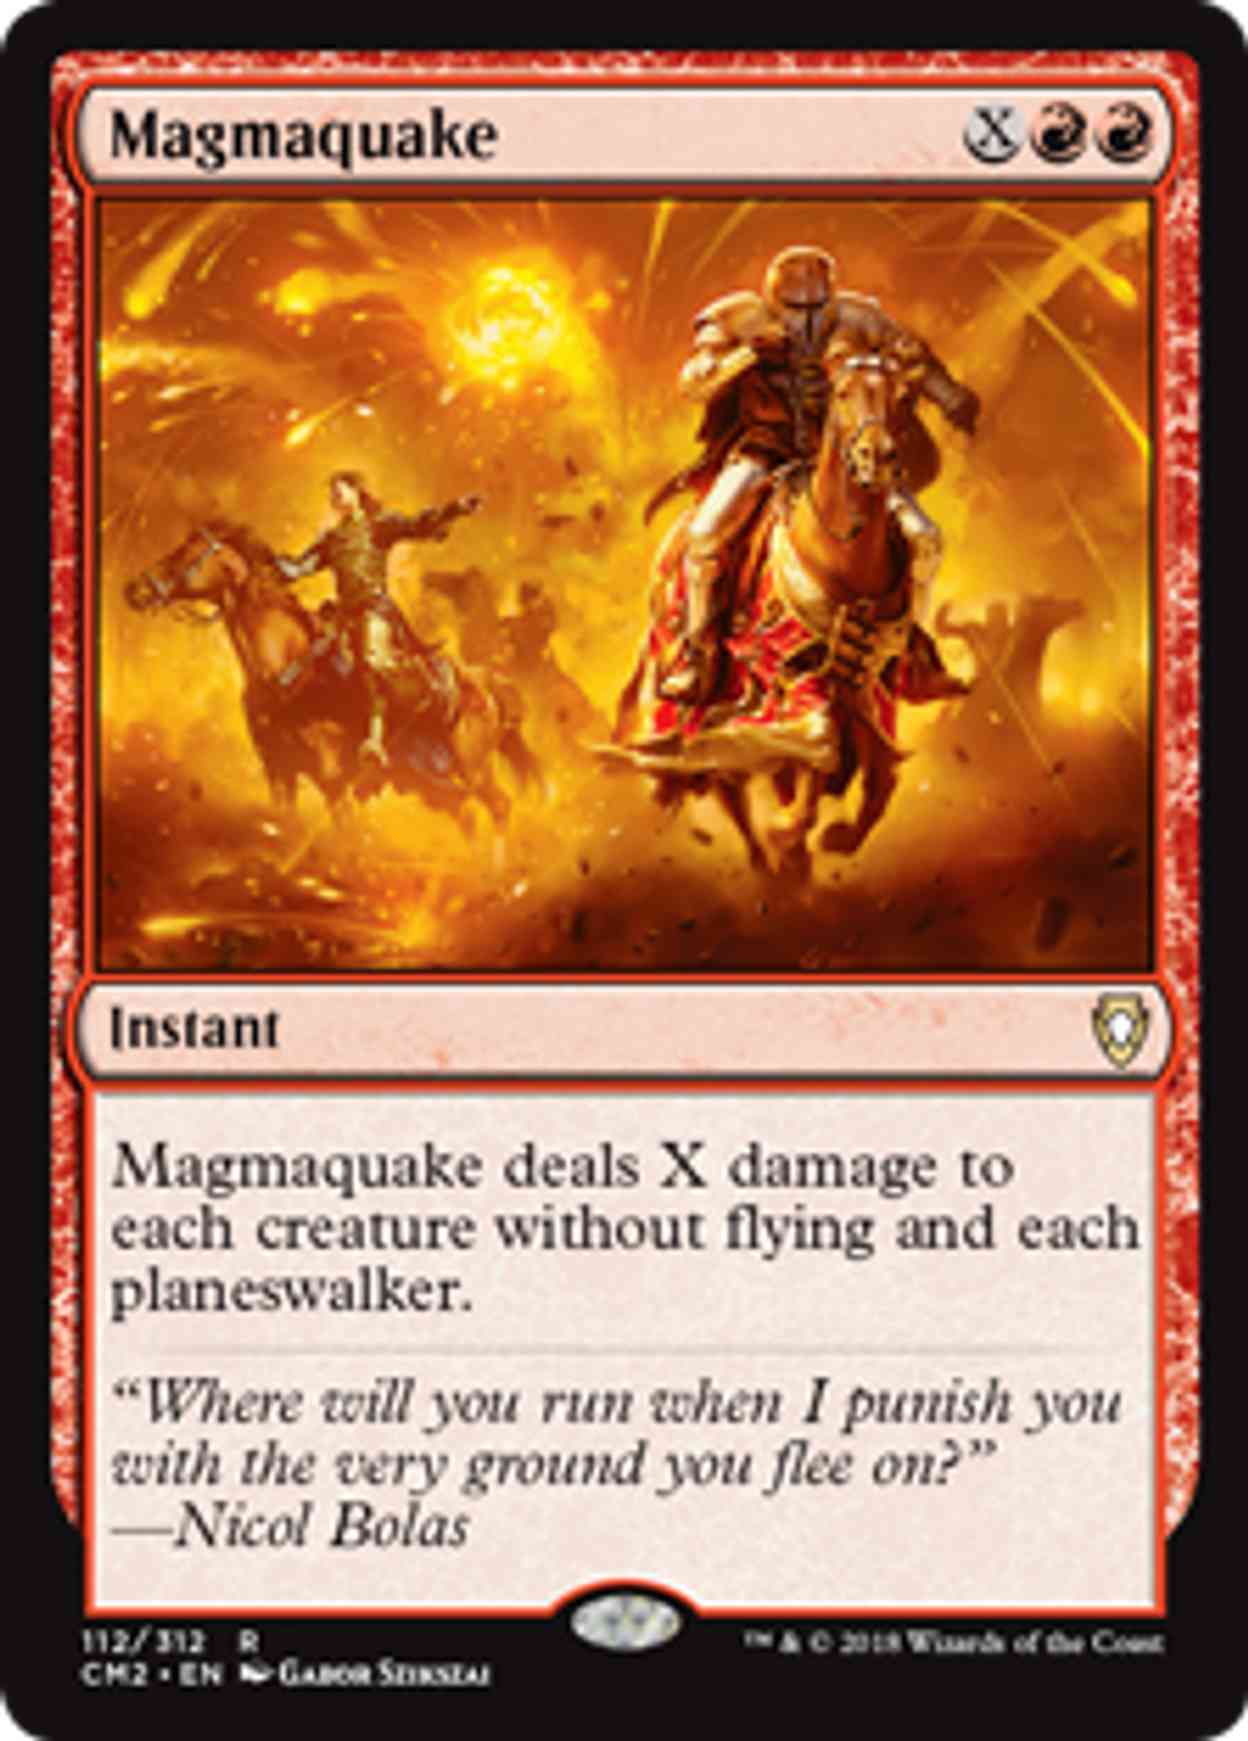 Magmaquake magic card front